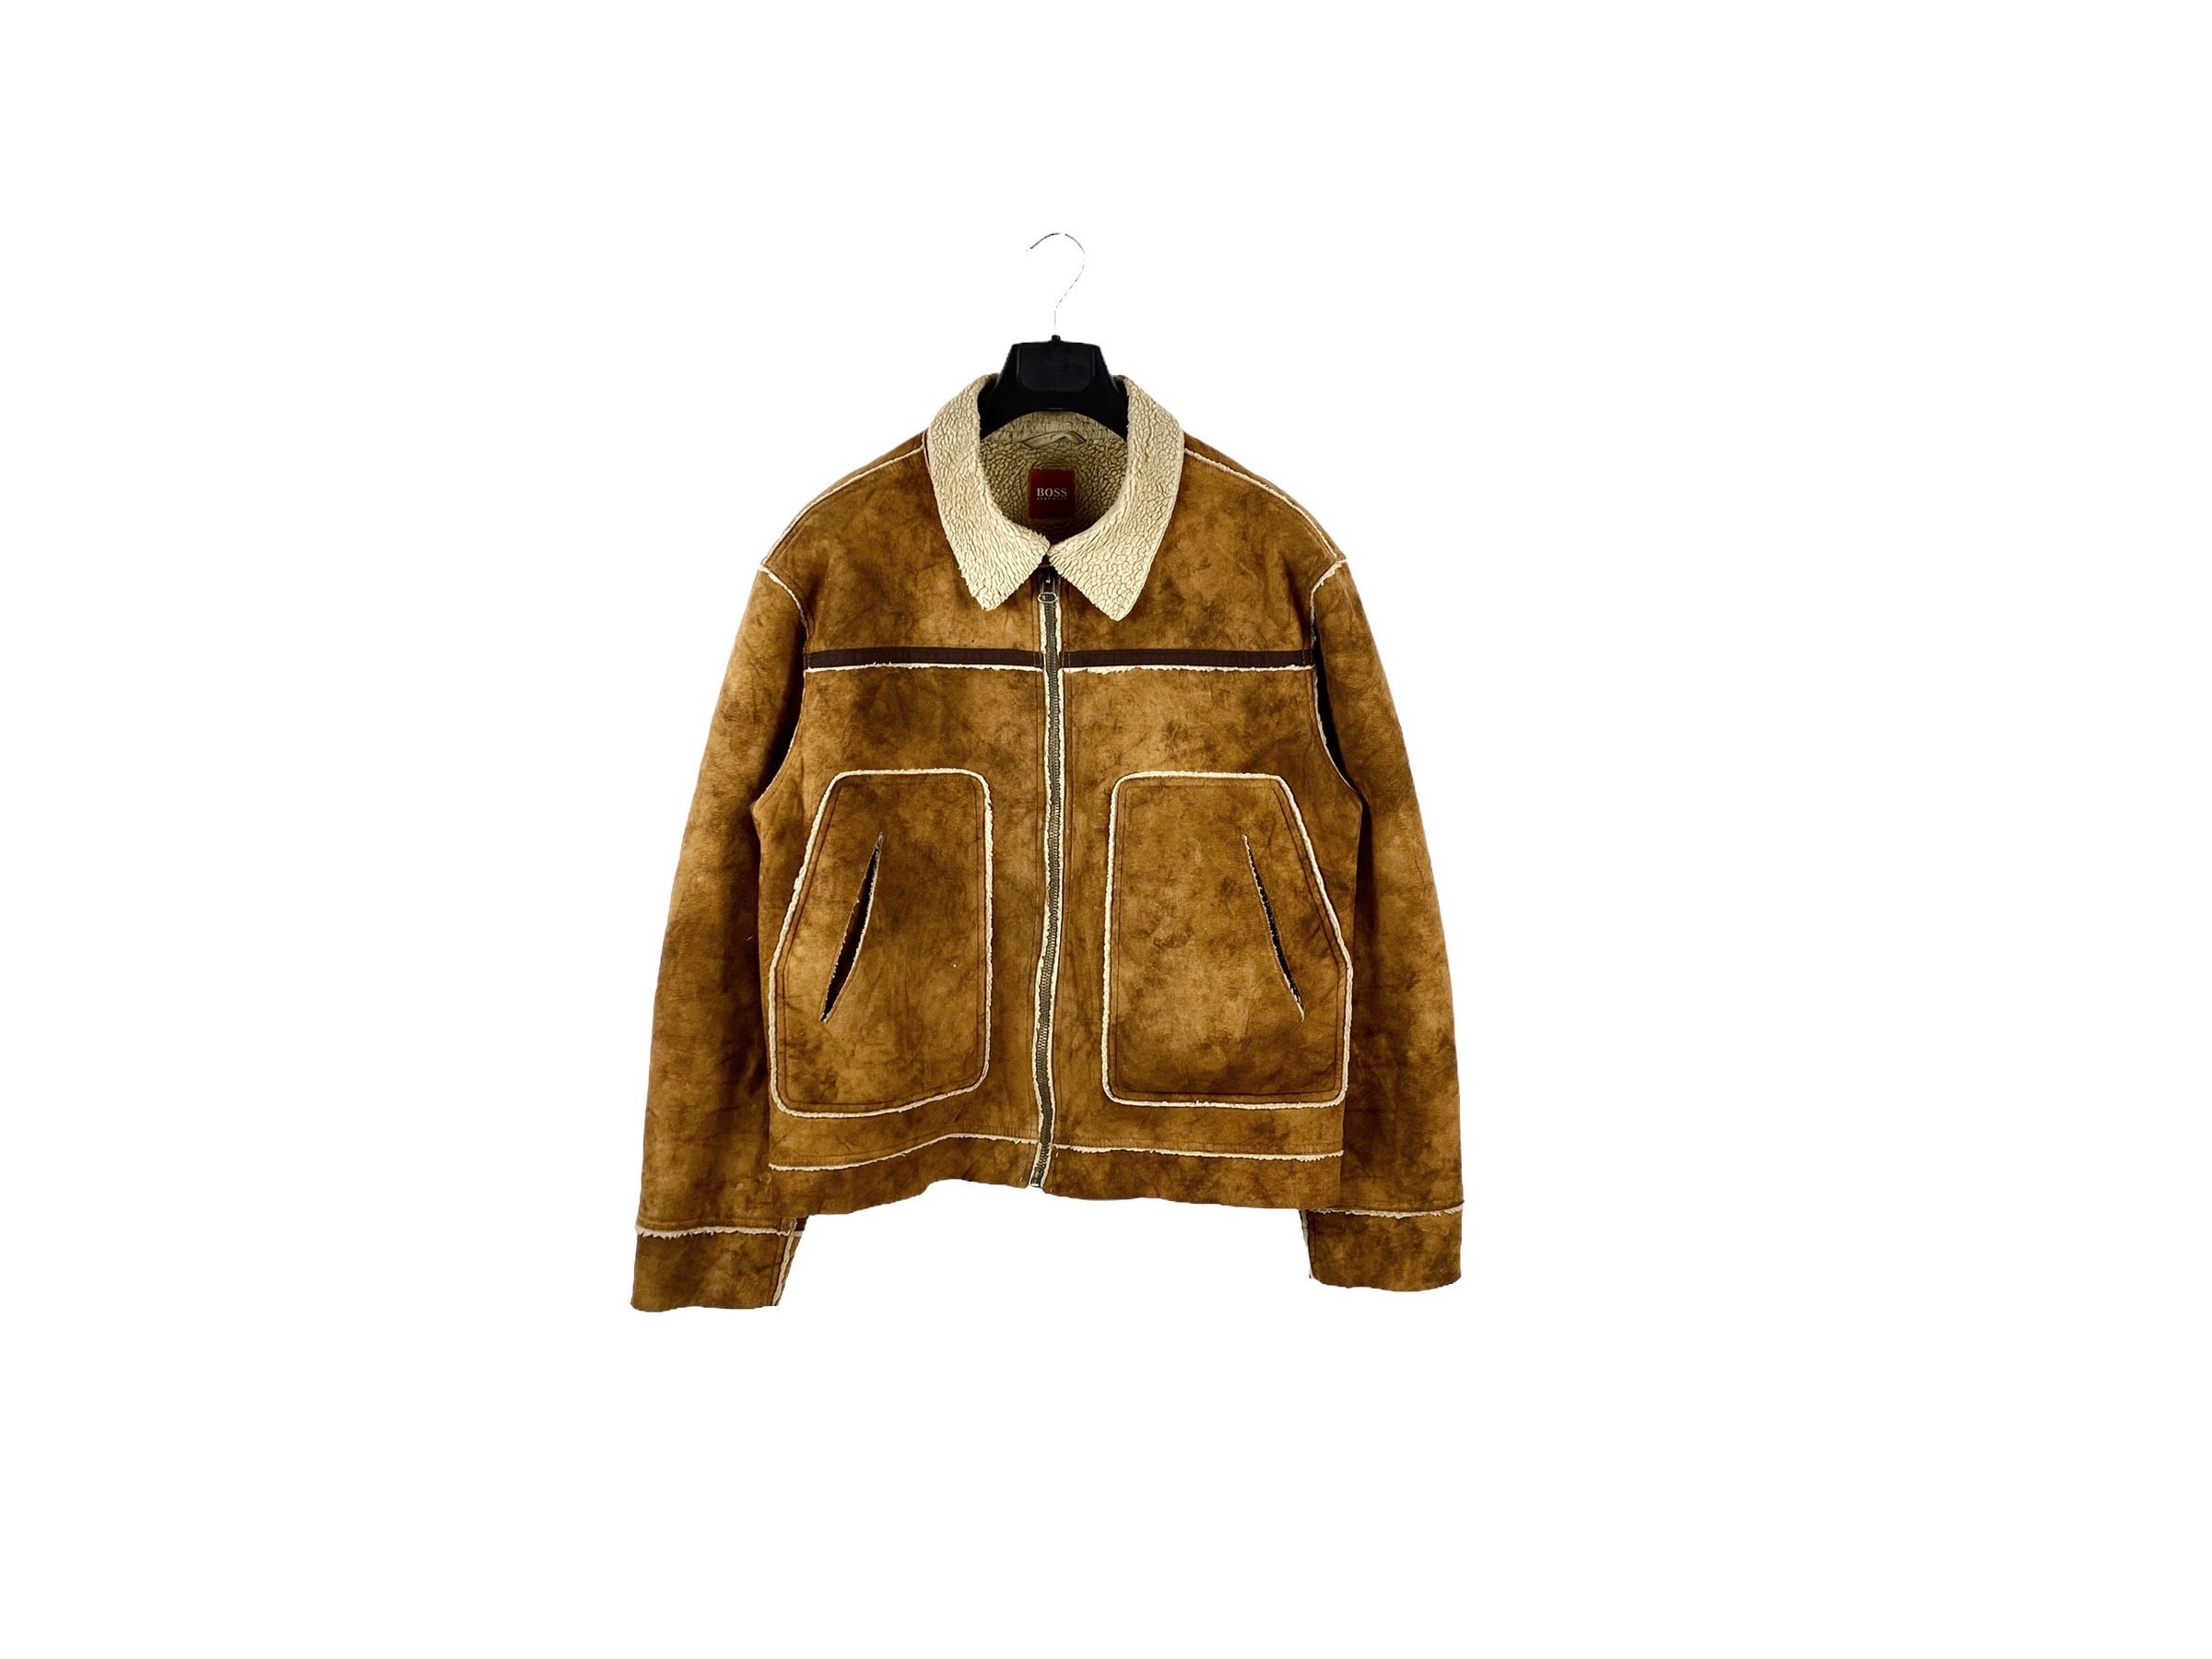 Louis Vuitton Shearling Embossed Monogram Jacket BLACK. Size 58